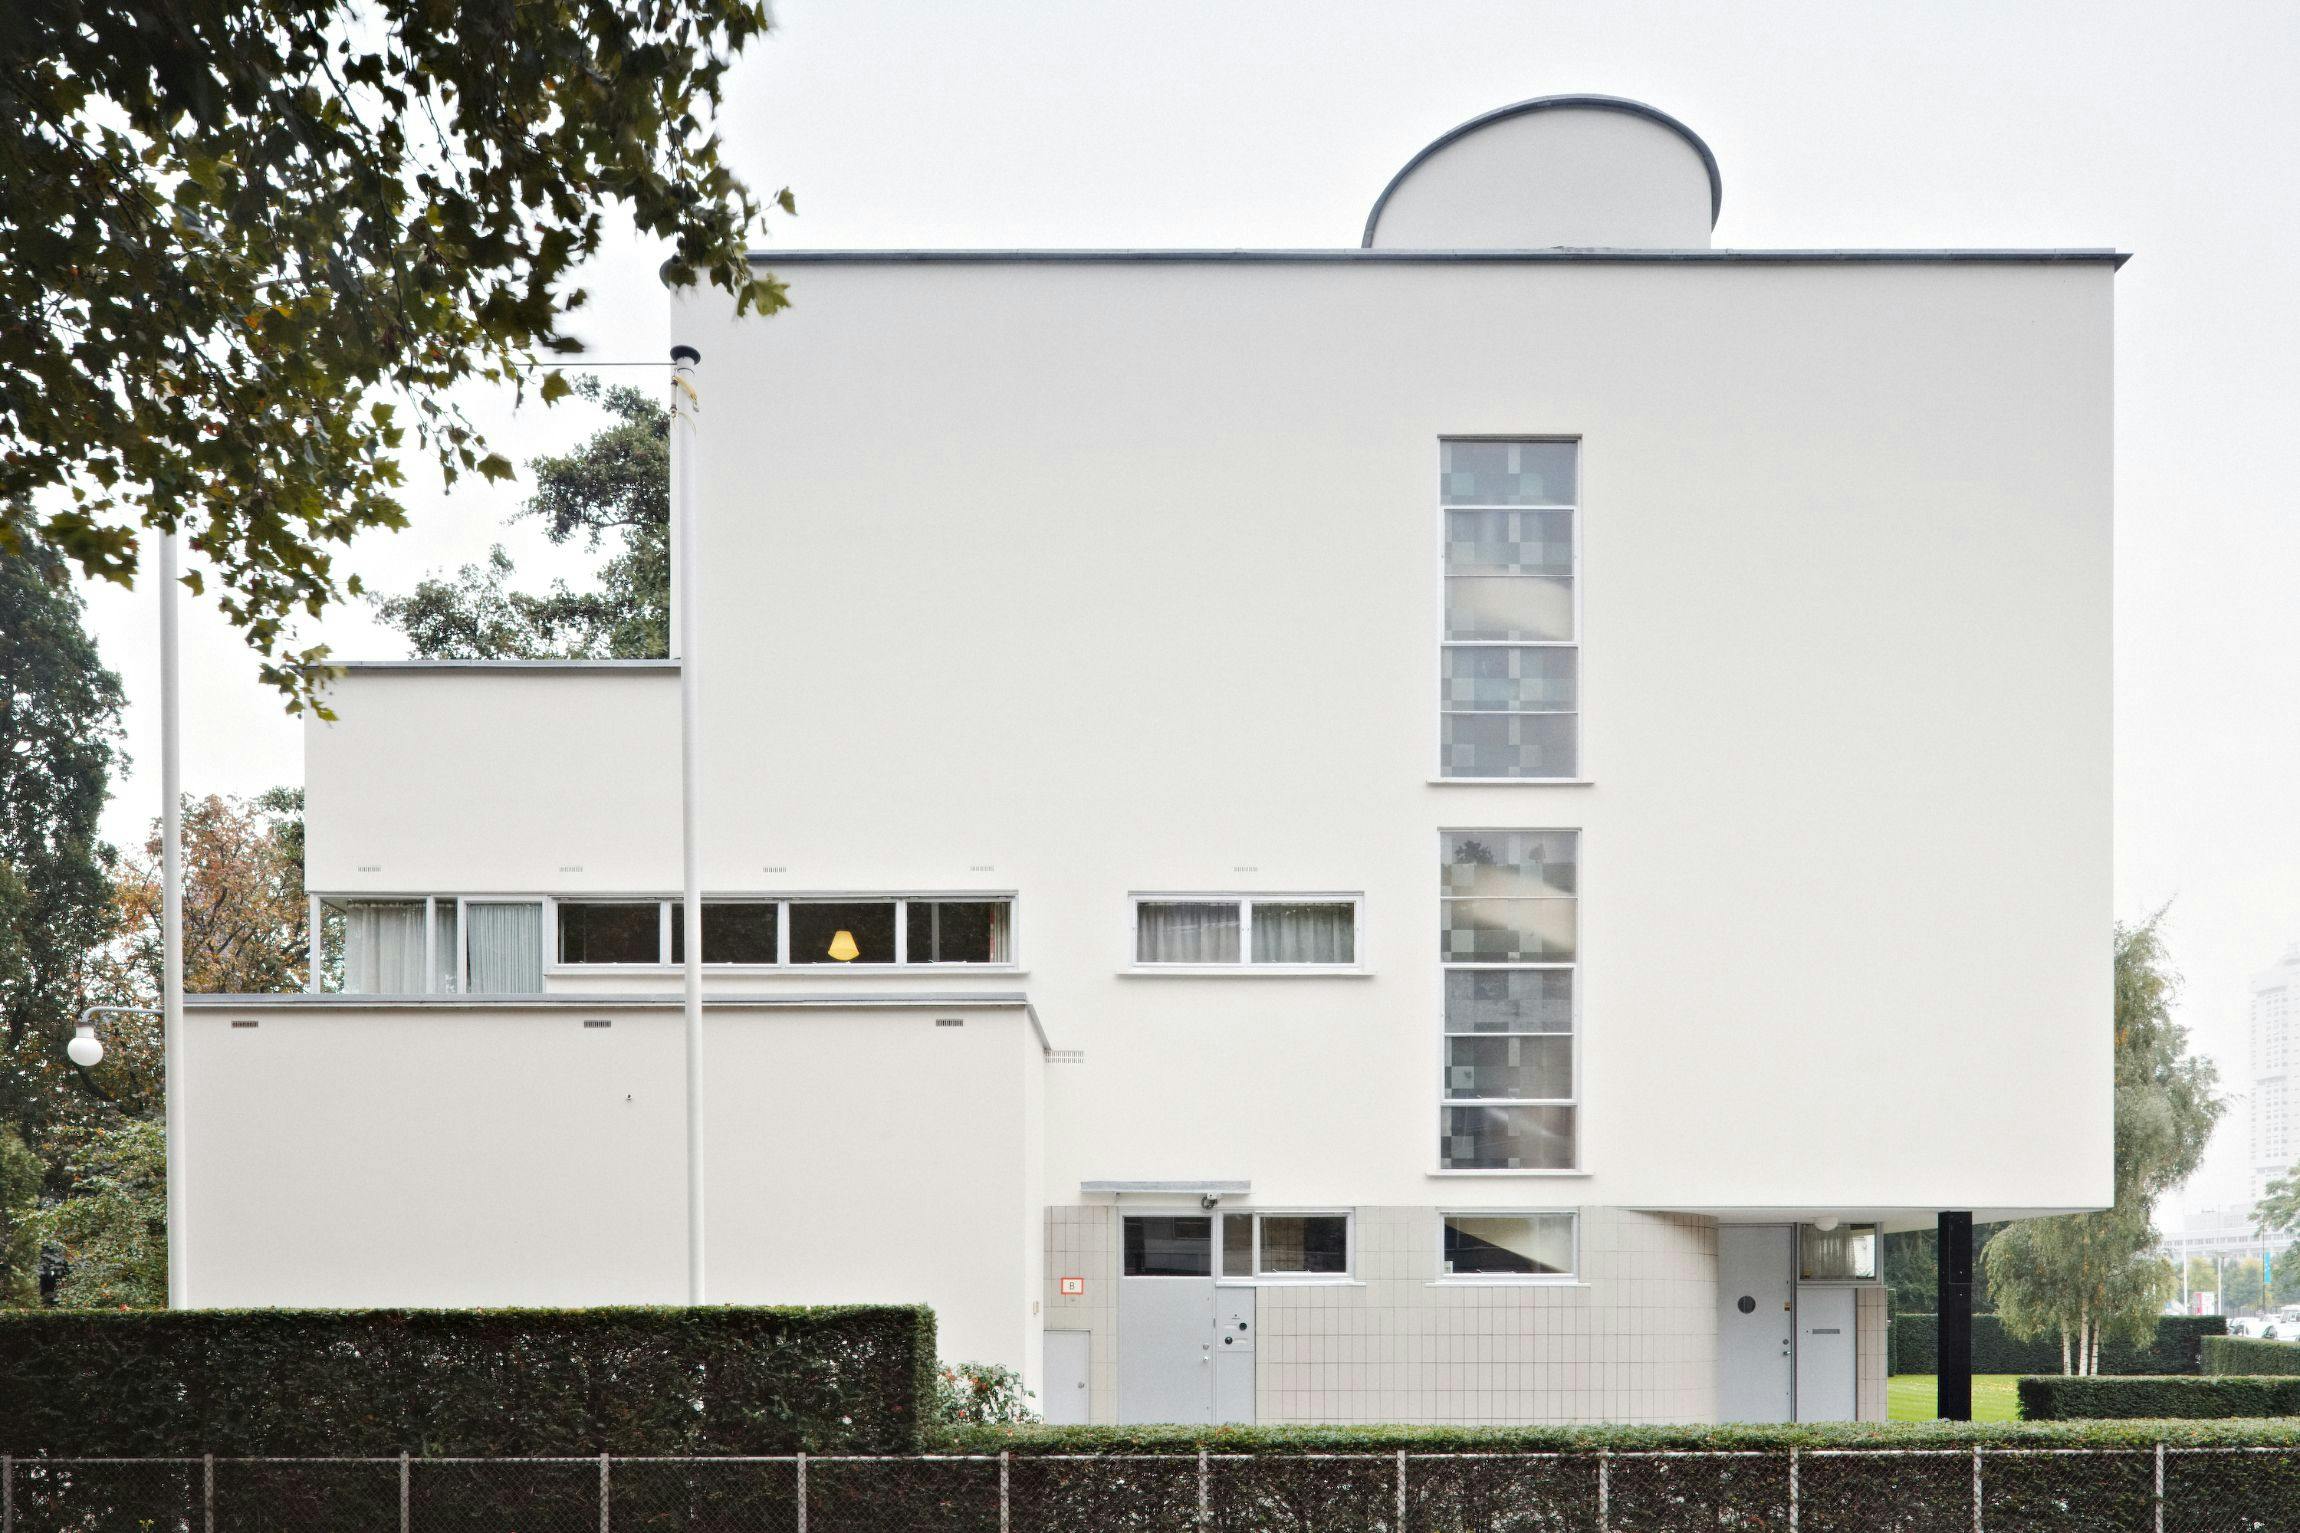 Huis Sonneveld, exterieur en tuin. Architectuur door Brinkman en Van der Vlugt. Foto Johannes Schwartz.  